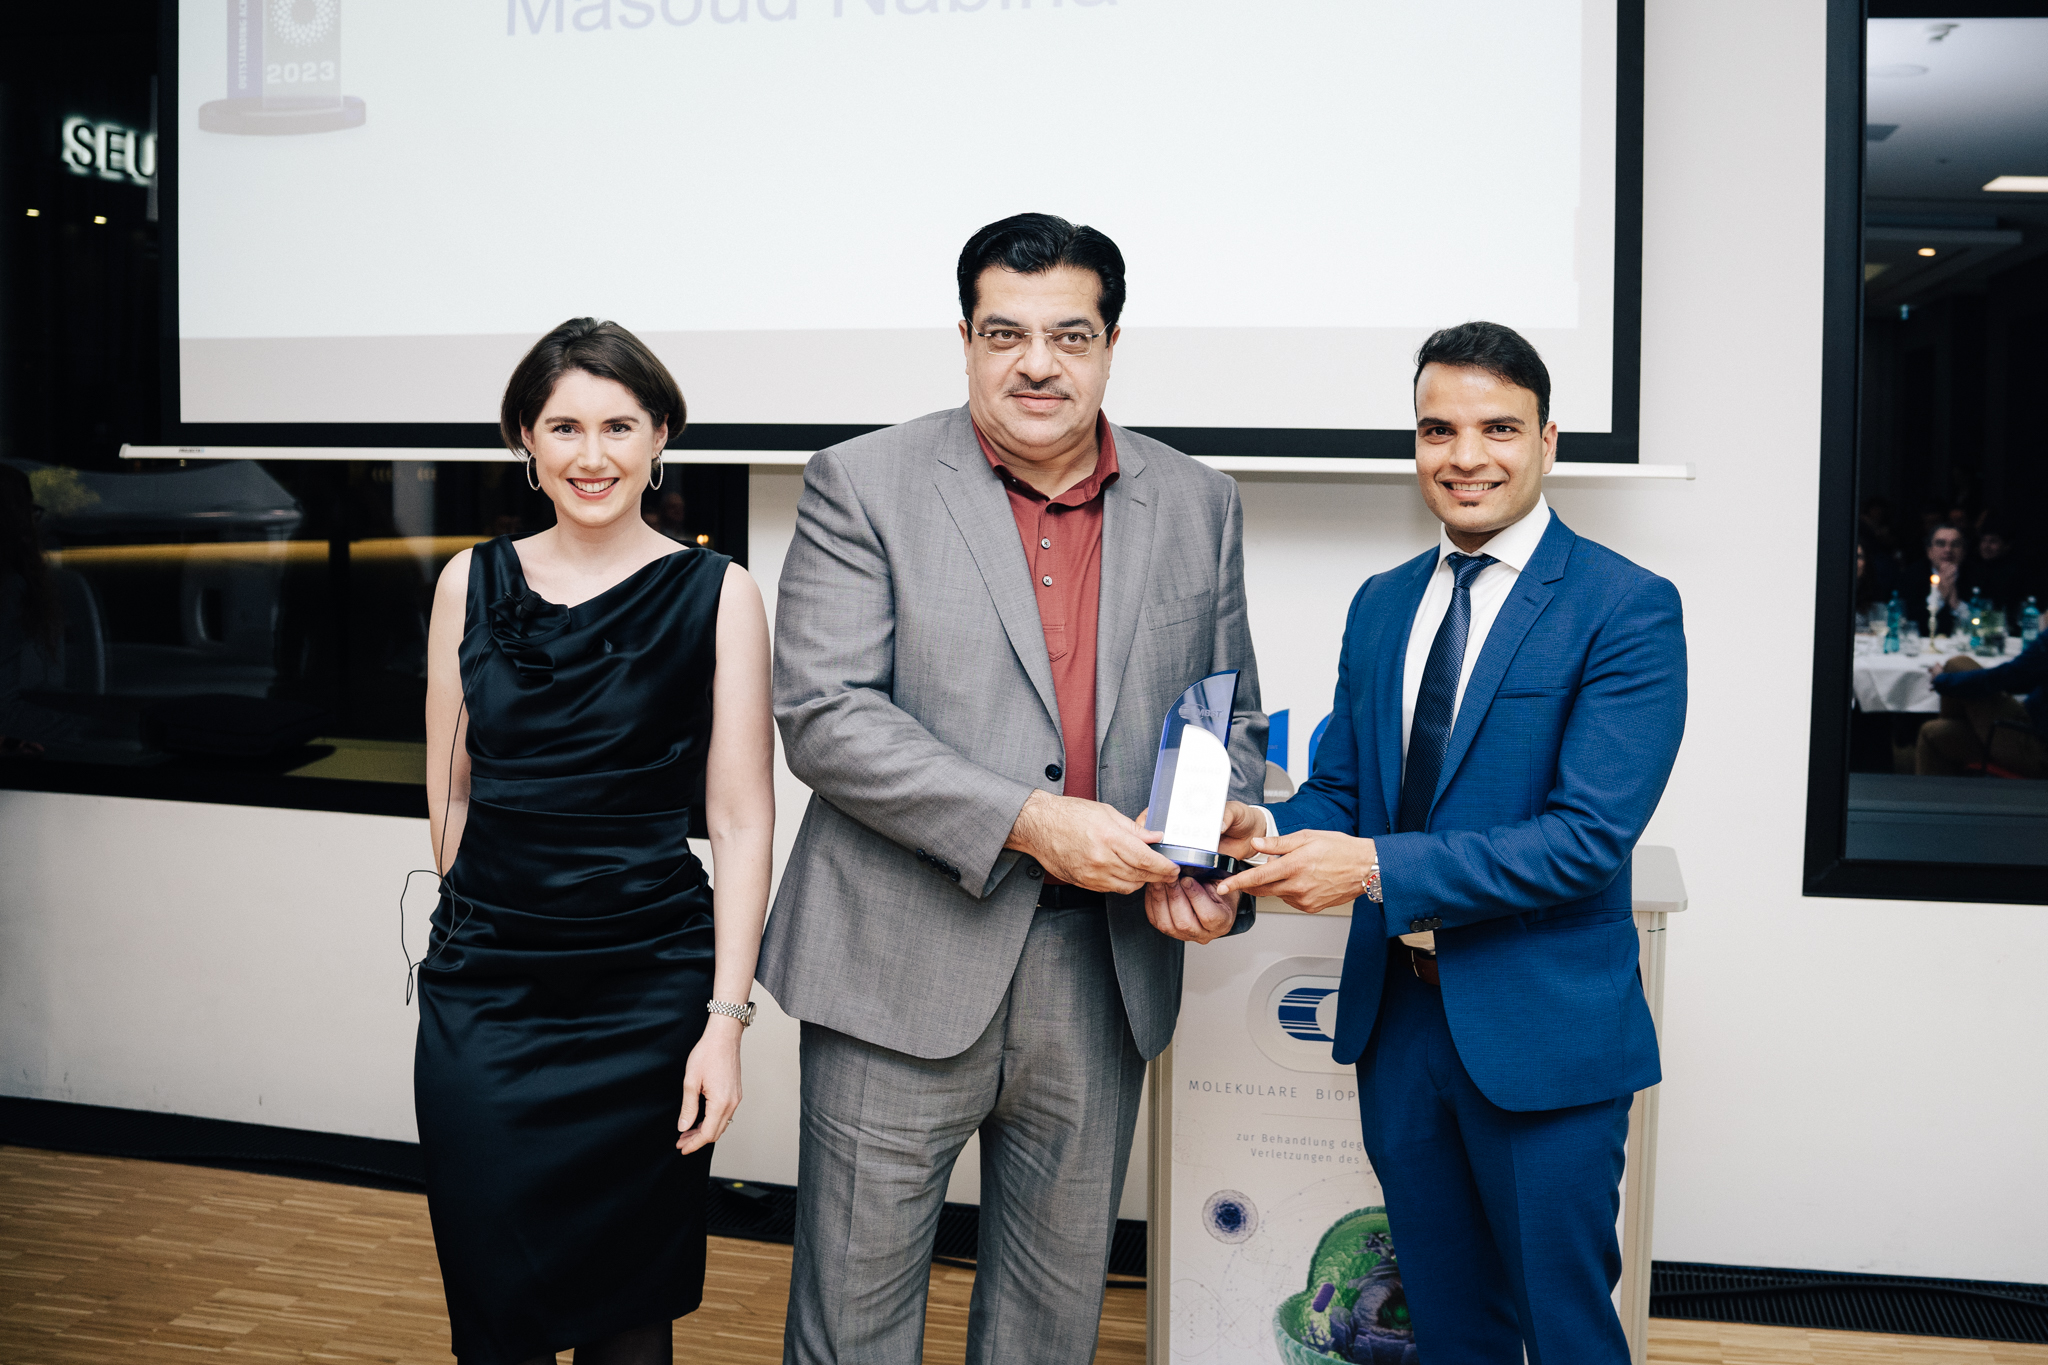 Masoud Nabina erhält einen MBST-Award für die Nabina Group von Geschäftsführerin Sarah Hartmann und Stellvertretendem Geschäftsführer Jagadish Paudel